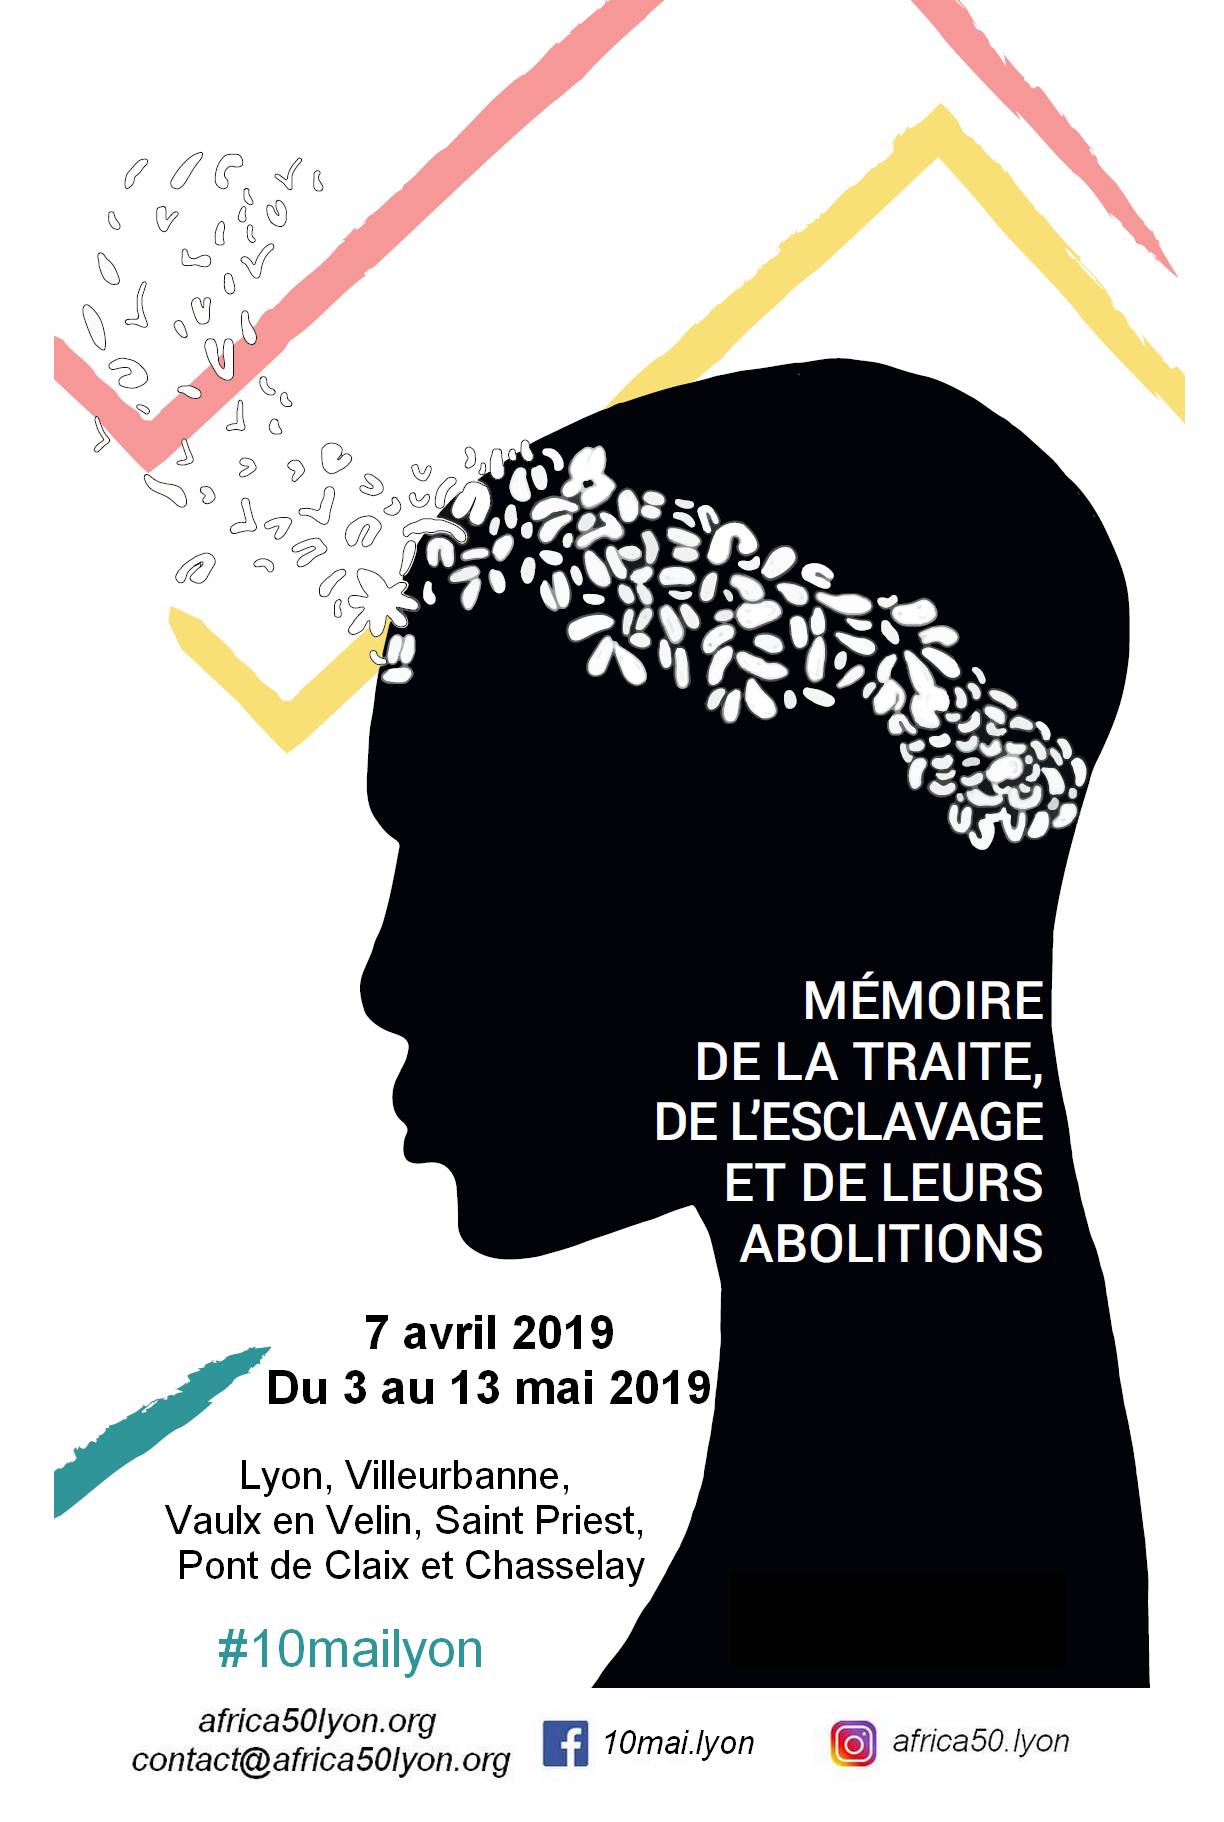 [MEMOIRE] Dizaine de commémoration de l’abolition de l’esclavage 2019 #10mailyon – Le programme